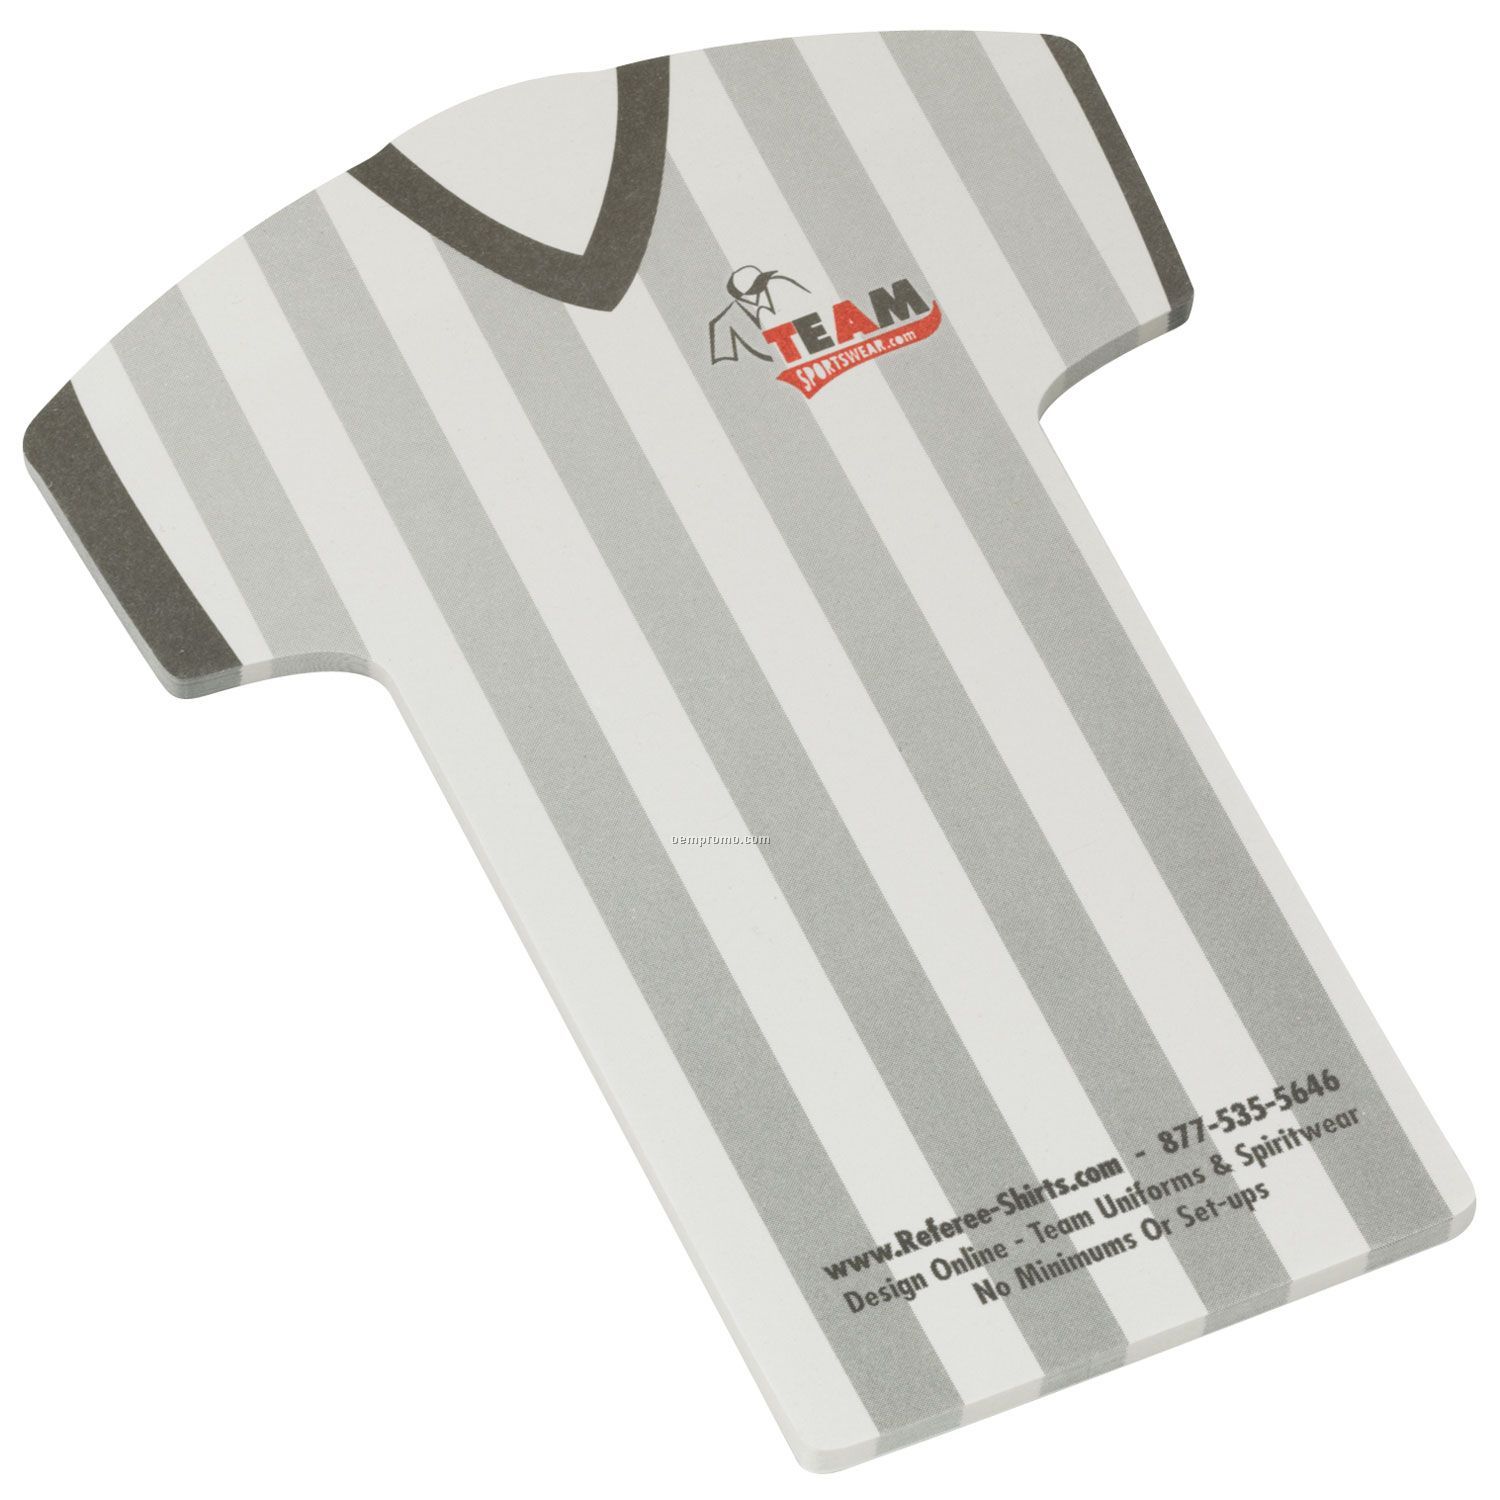 Earth Friendly Adhesive Notes/T-shirt - 50 Sheets